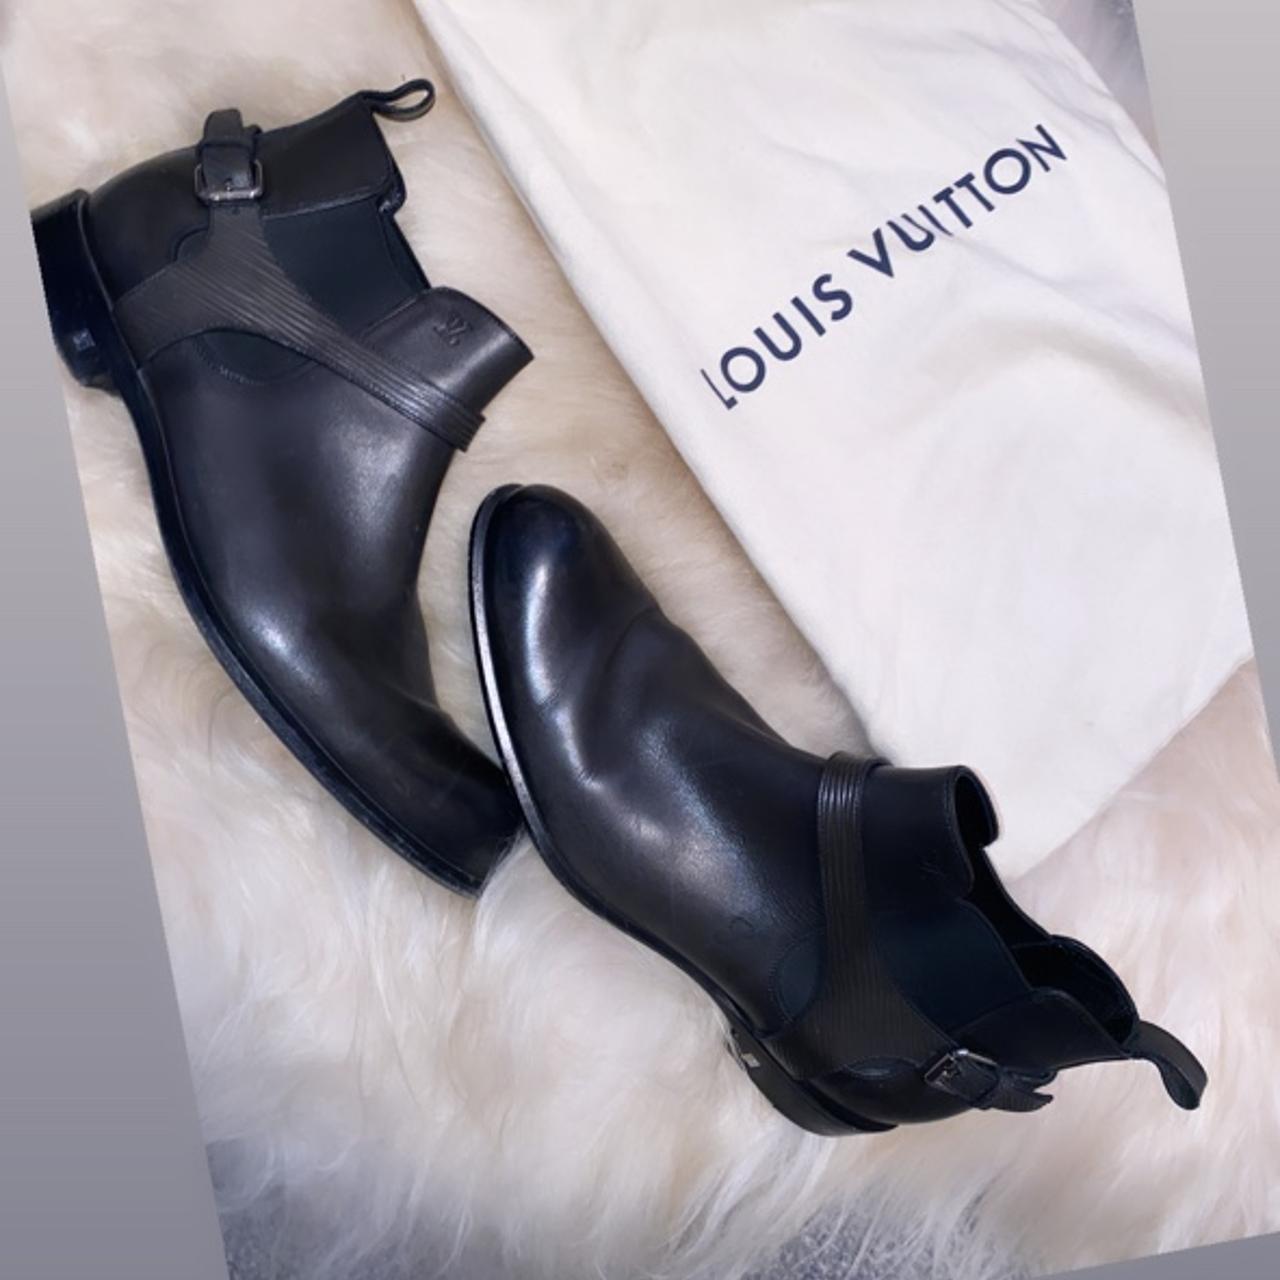 Size 8 Louis Vuitton men's boots. Only worn a few - Depop